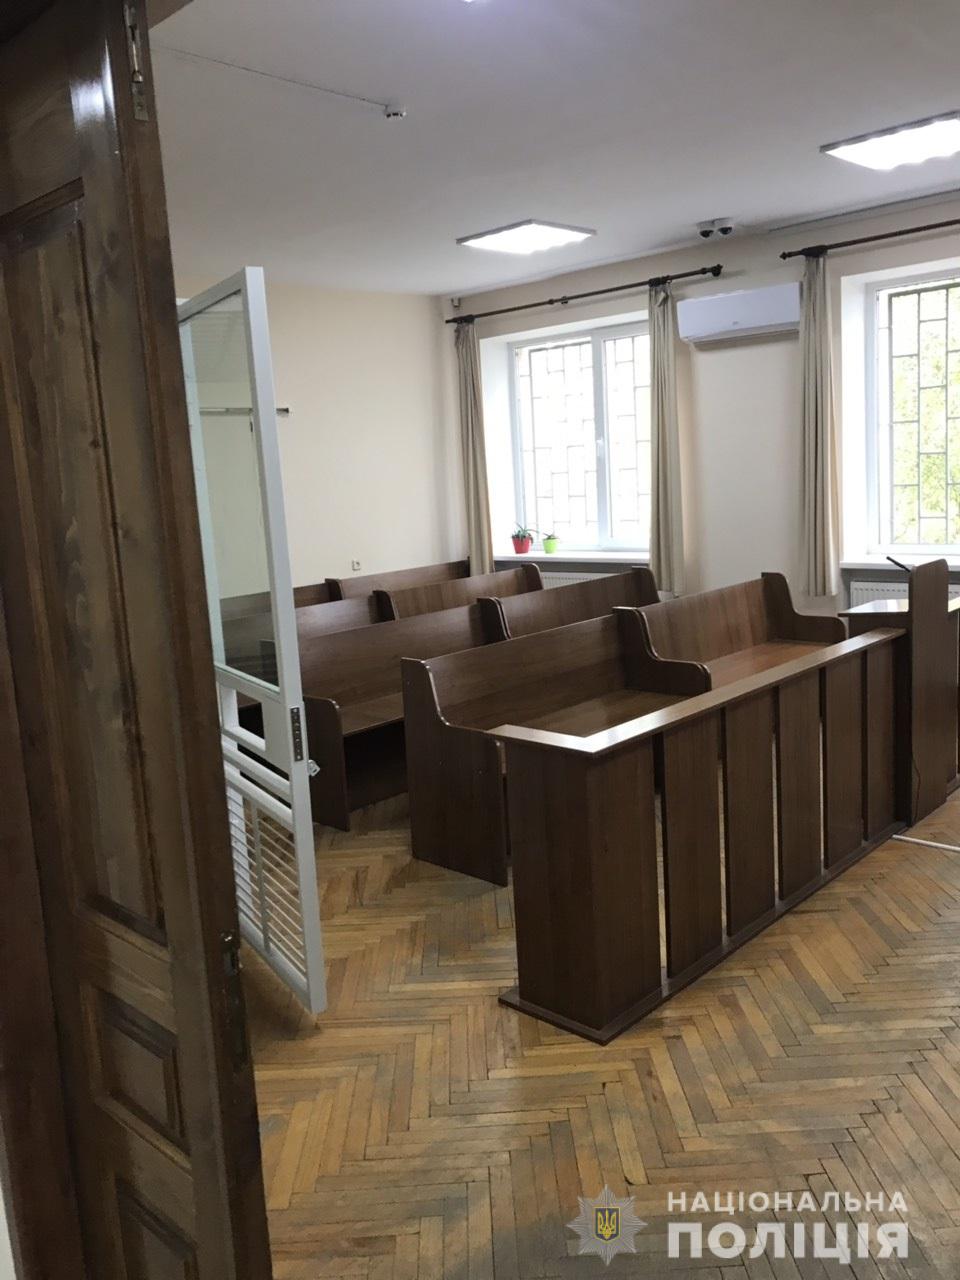 Інформація про замінування суду в Ужгороді не підтвердилася – поліція (ФОТО)